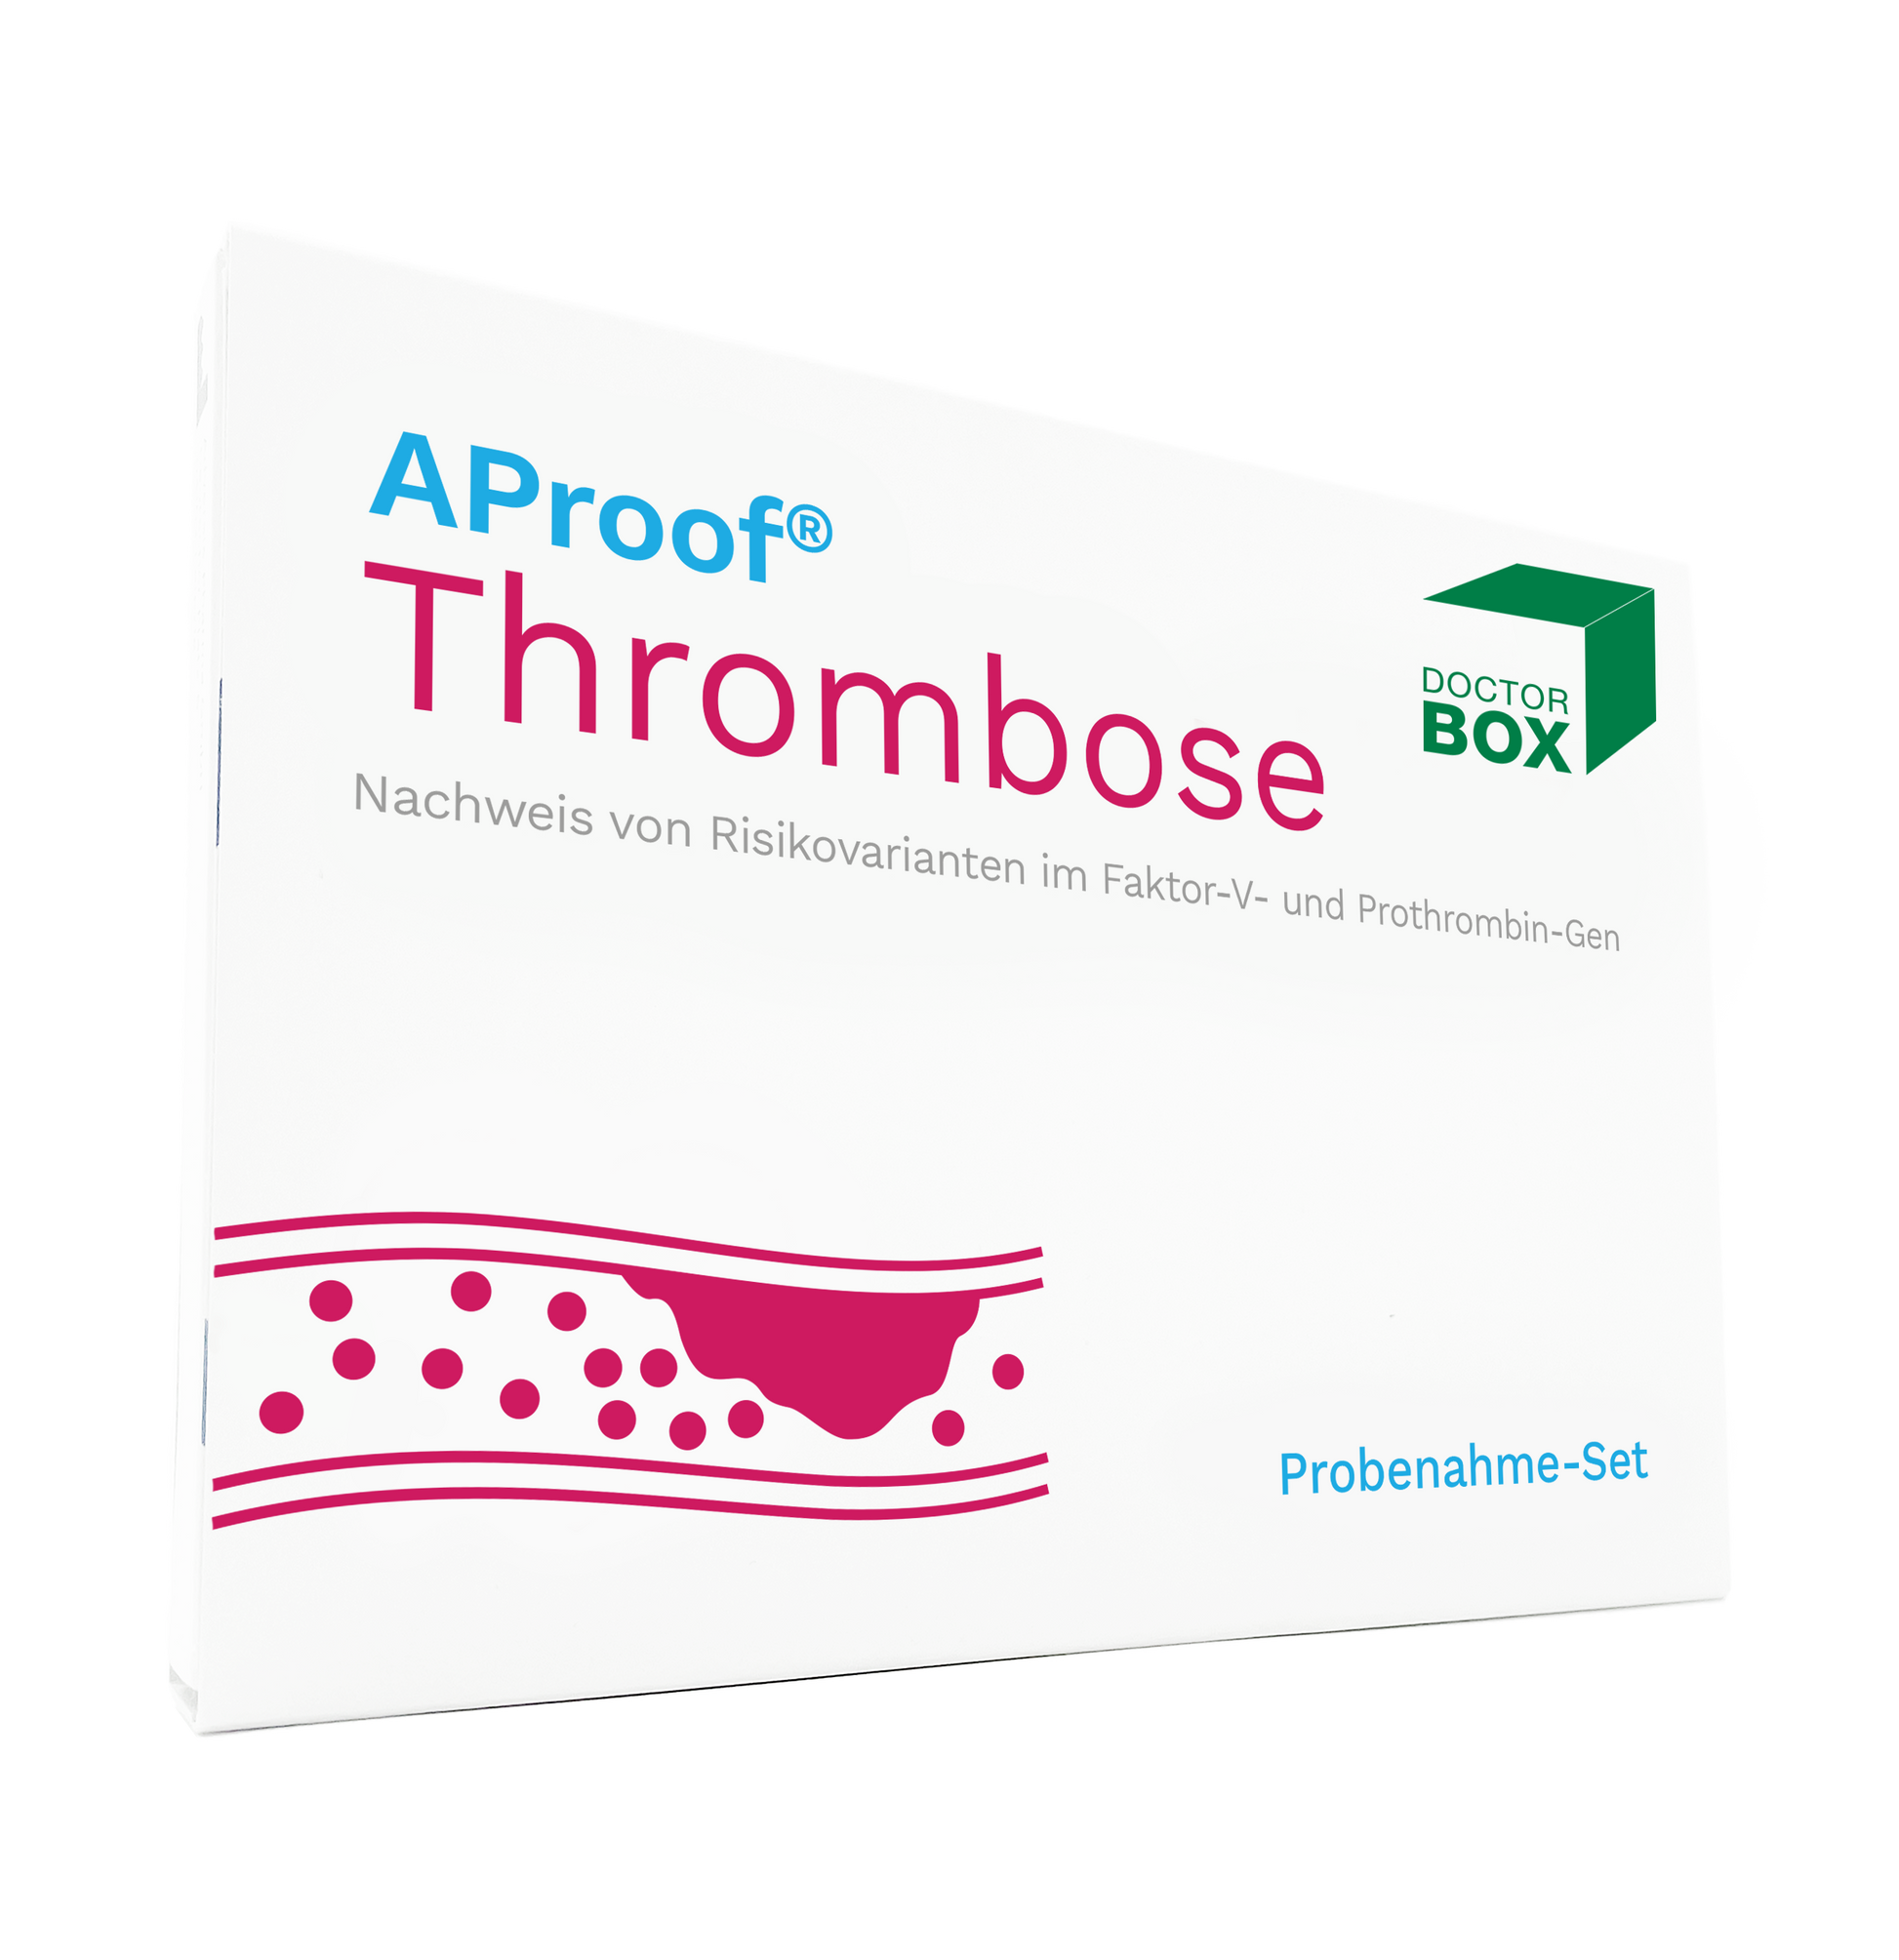 Die Verpackung des Thrombose Selbsttest, Probenahme-Sets aProof wird abgebildet. Es ist das aProof und DoctorBox Logo zu sehen.